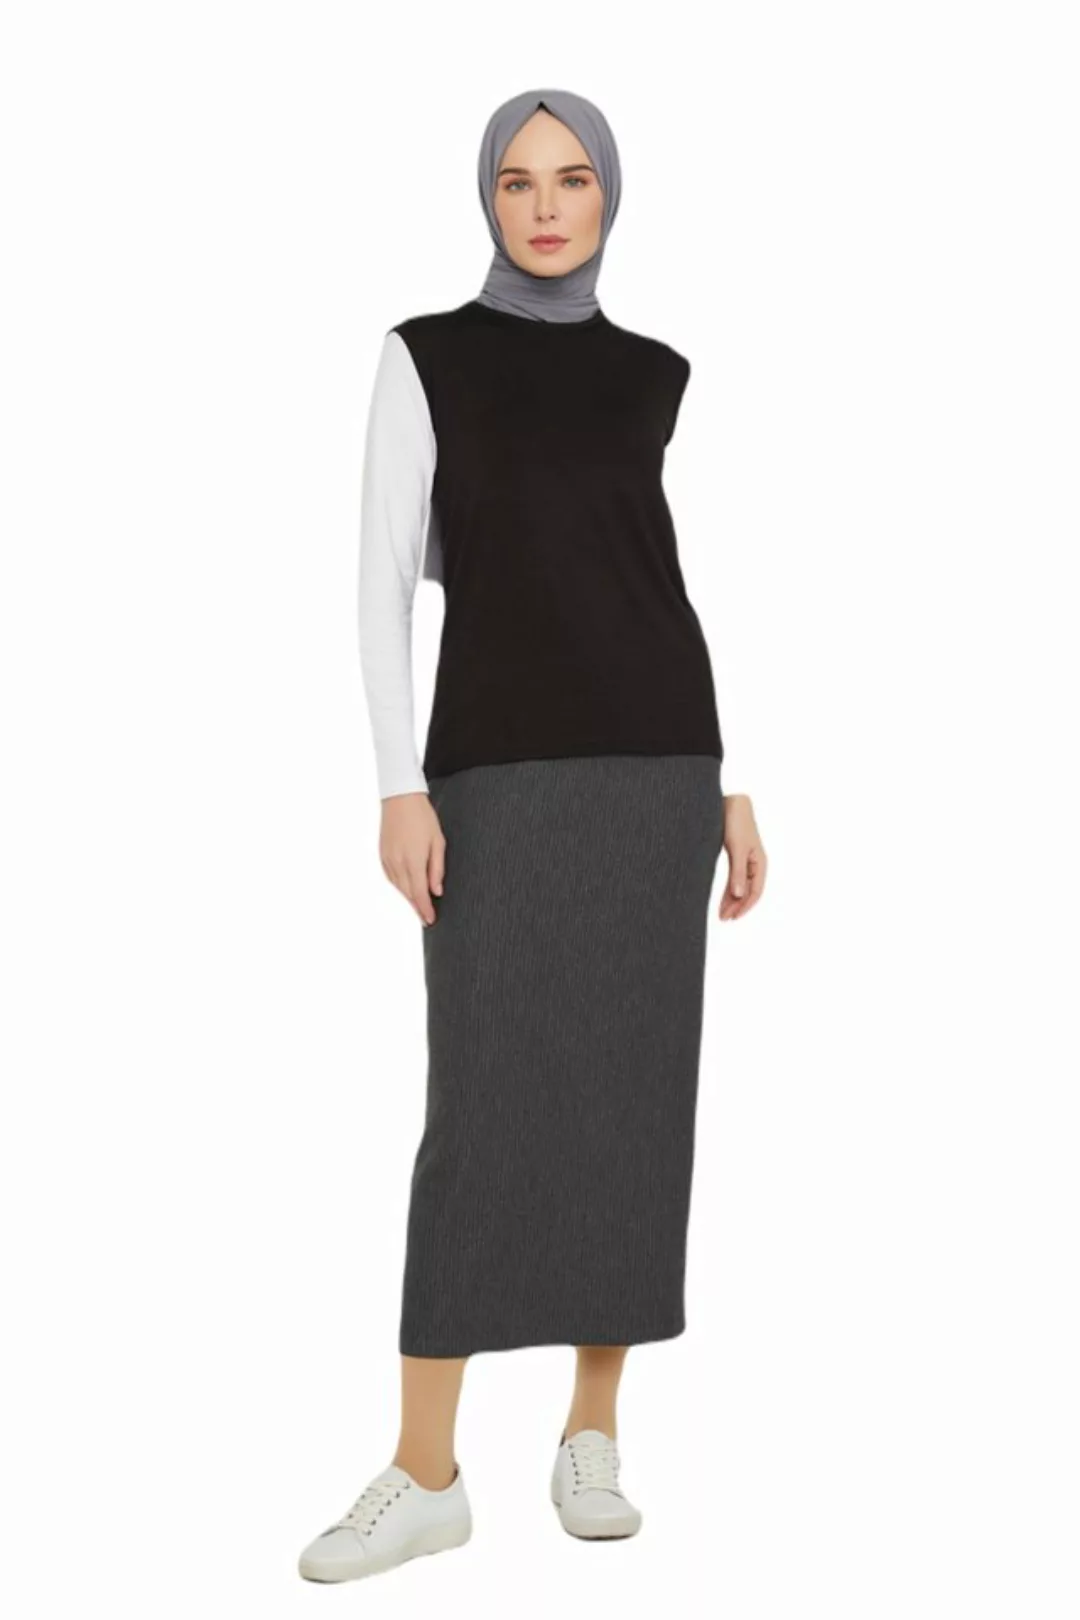 ARMİNE Bodykleid Armine Zero Sleeve Badi – Moderne und elegante Hijab-Mode günstig online kaufen